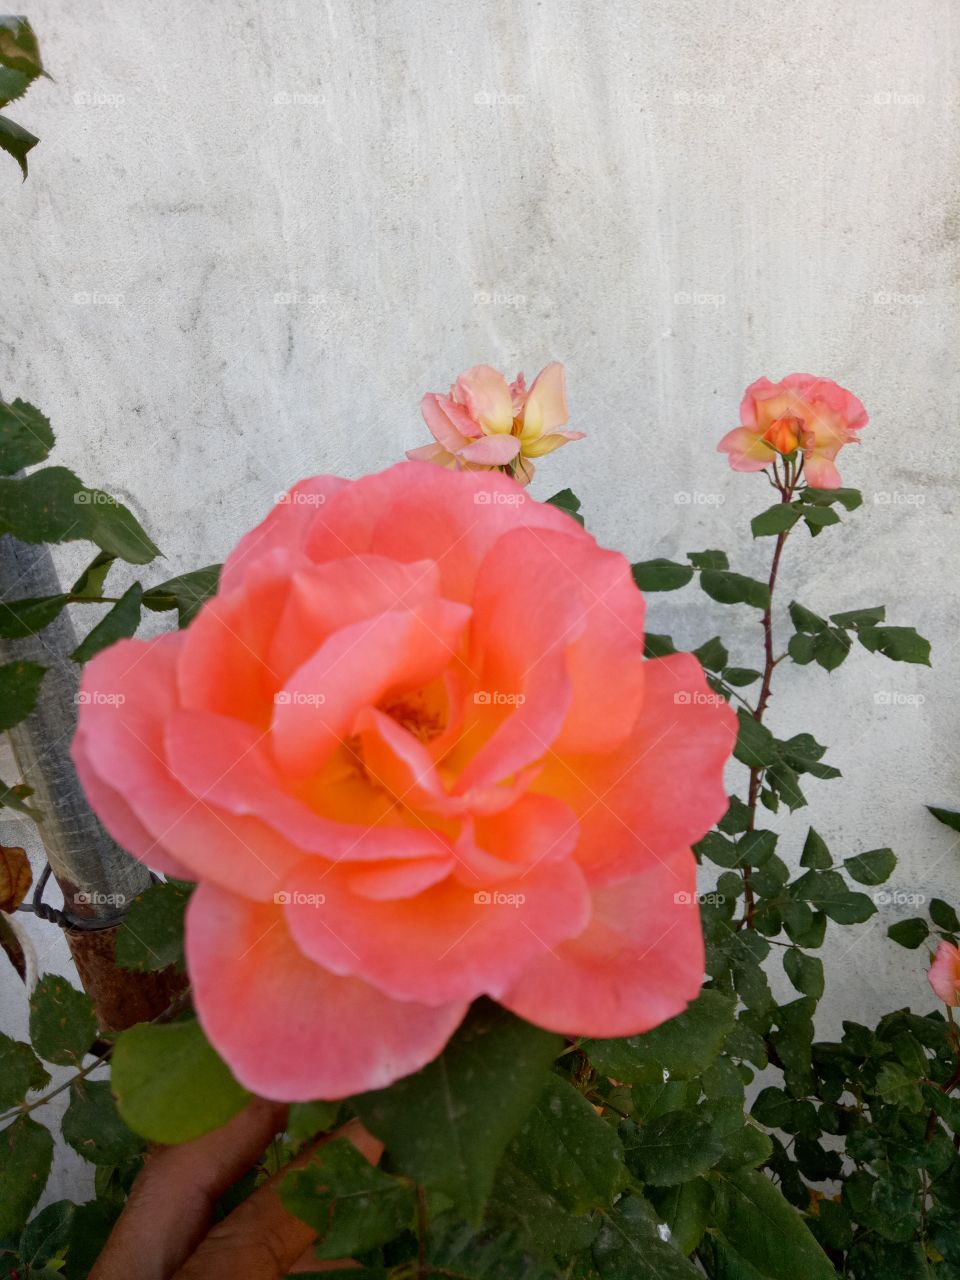 Flower, Rose, Flora, Nature, Floral